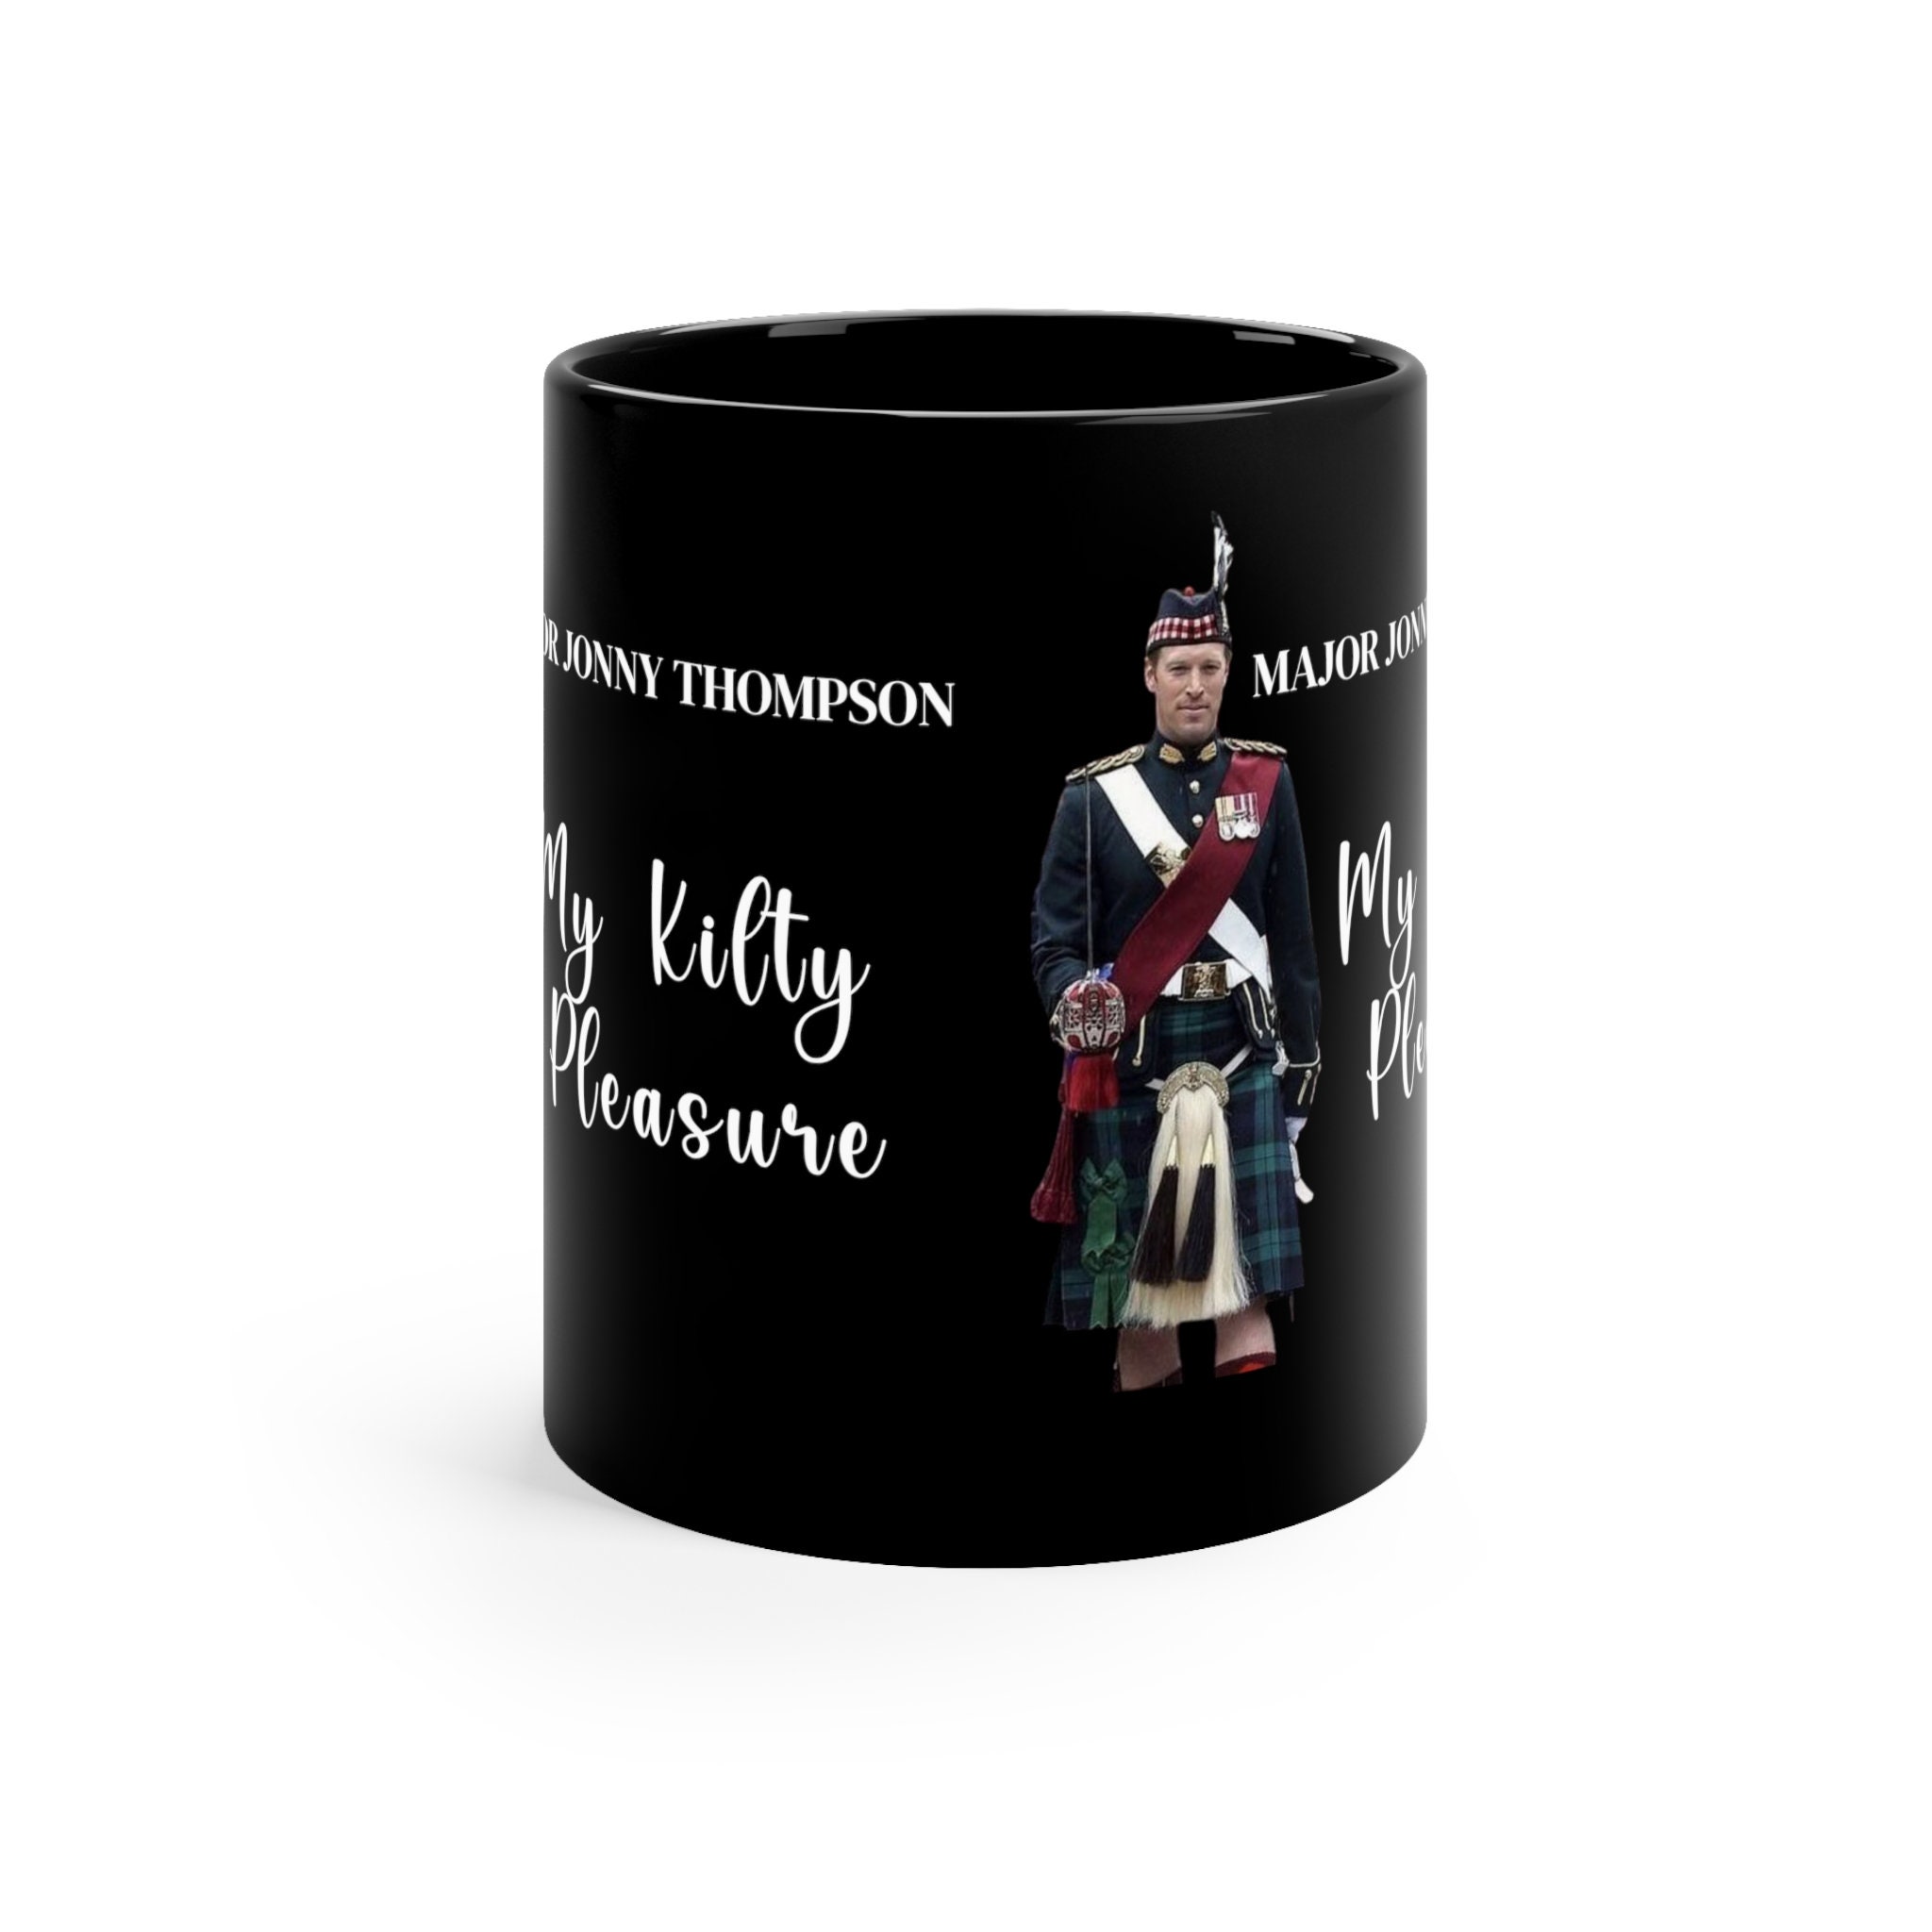 Travel mug with a handle #1 - Kilty Pleasure Tours